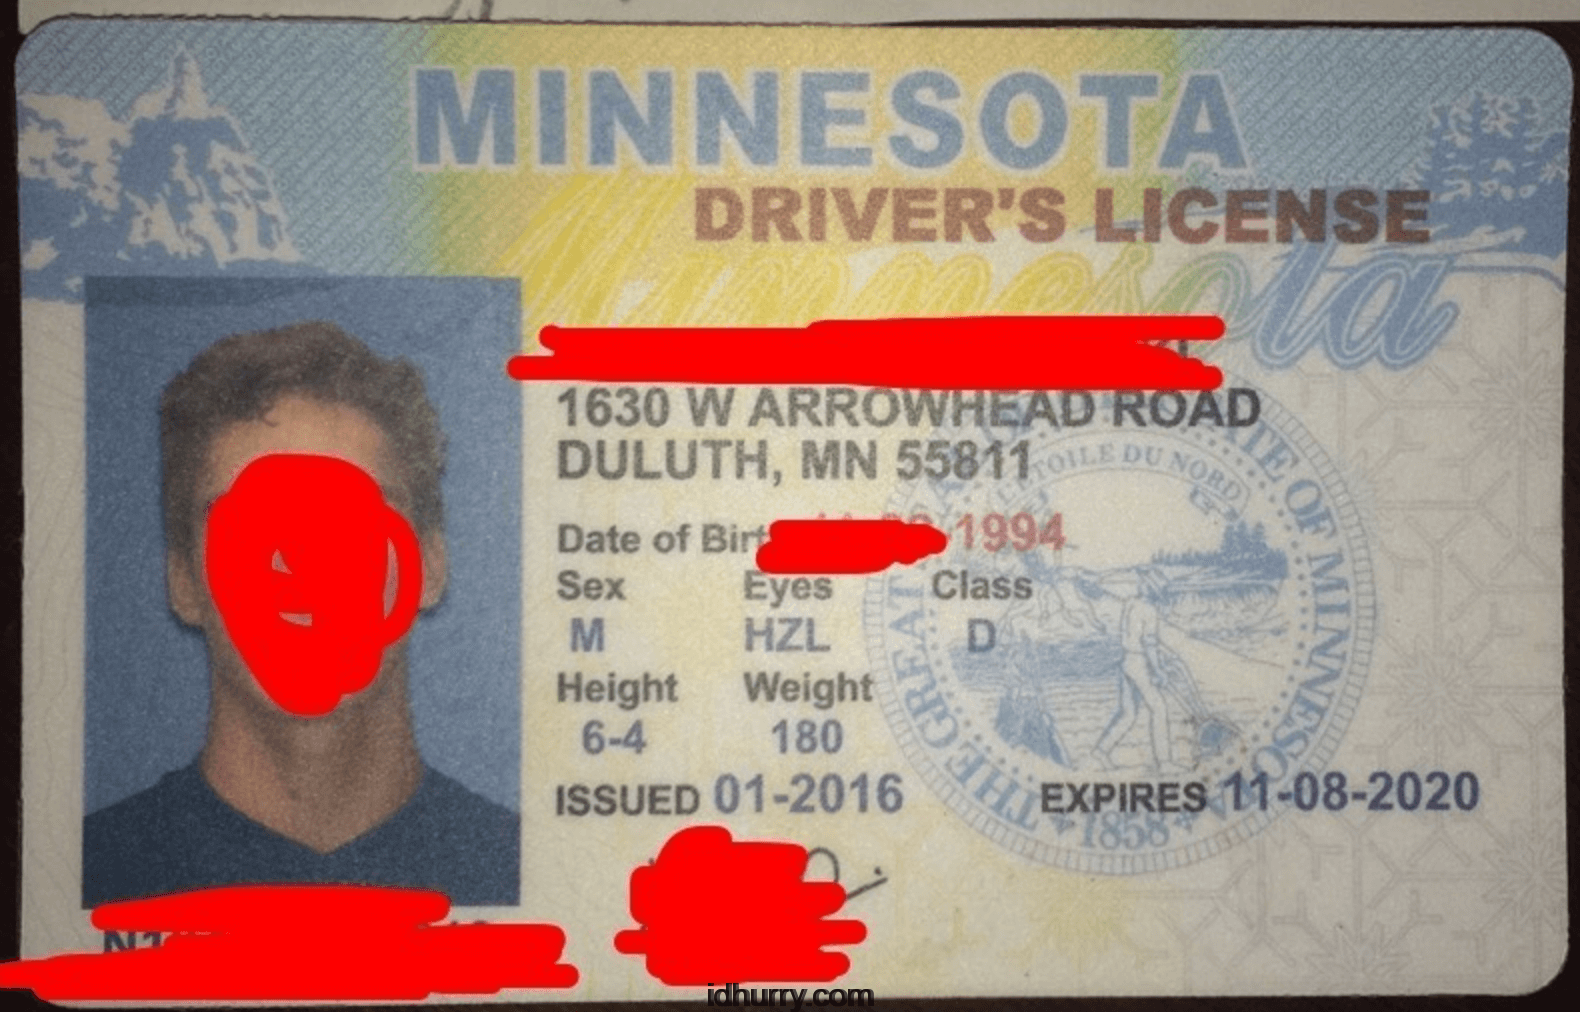 Minnesota Fake Id Templates